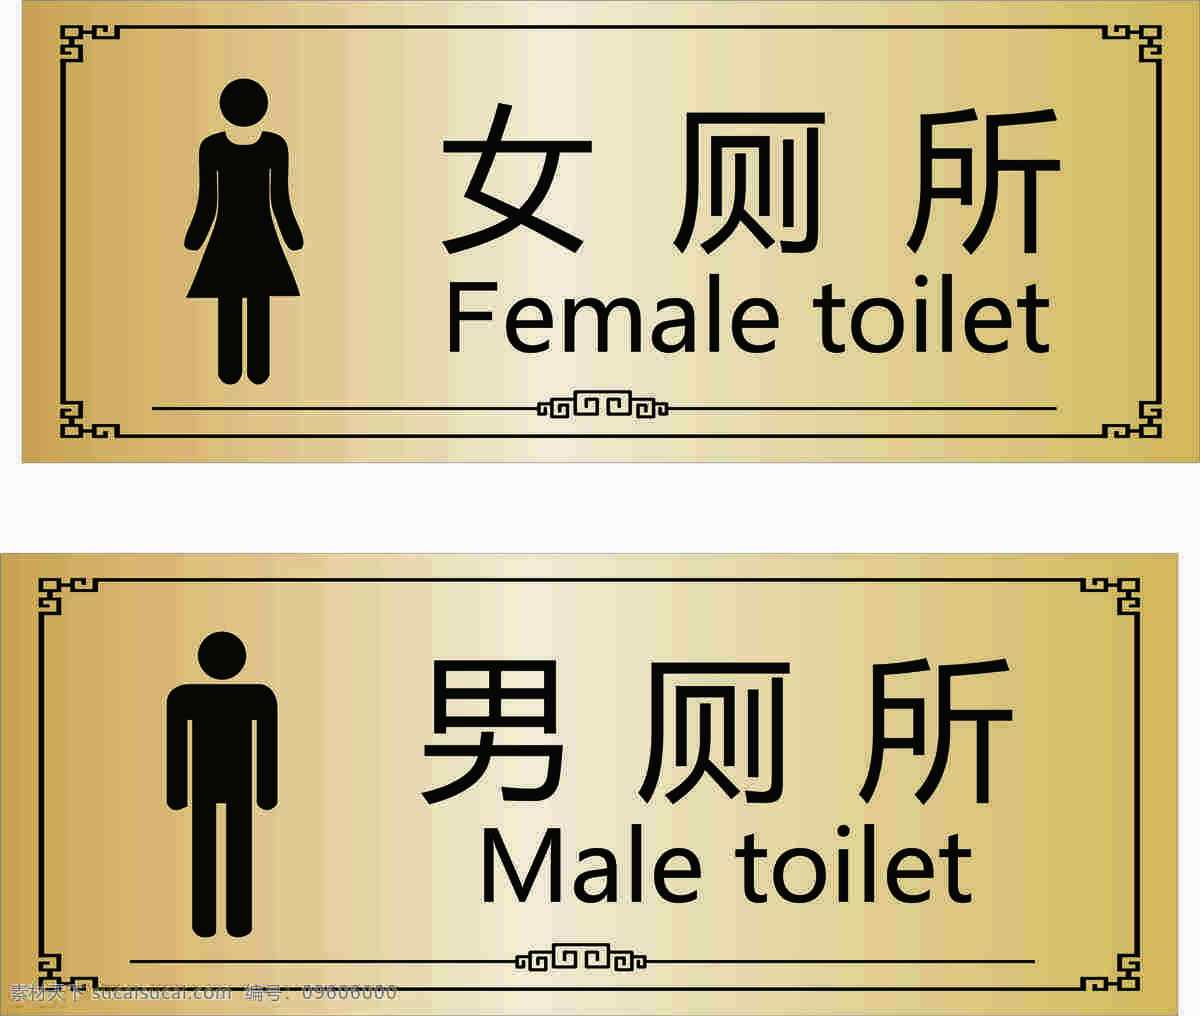 厕所标牌图片 厕所牌 男厕所 女厕所 洗手间 指示牌 分层